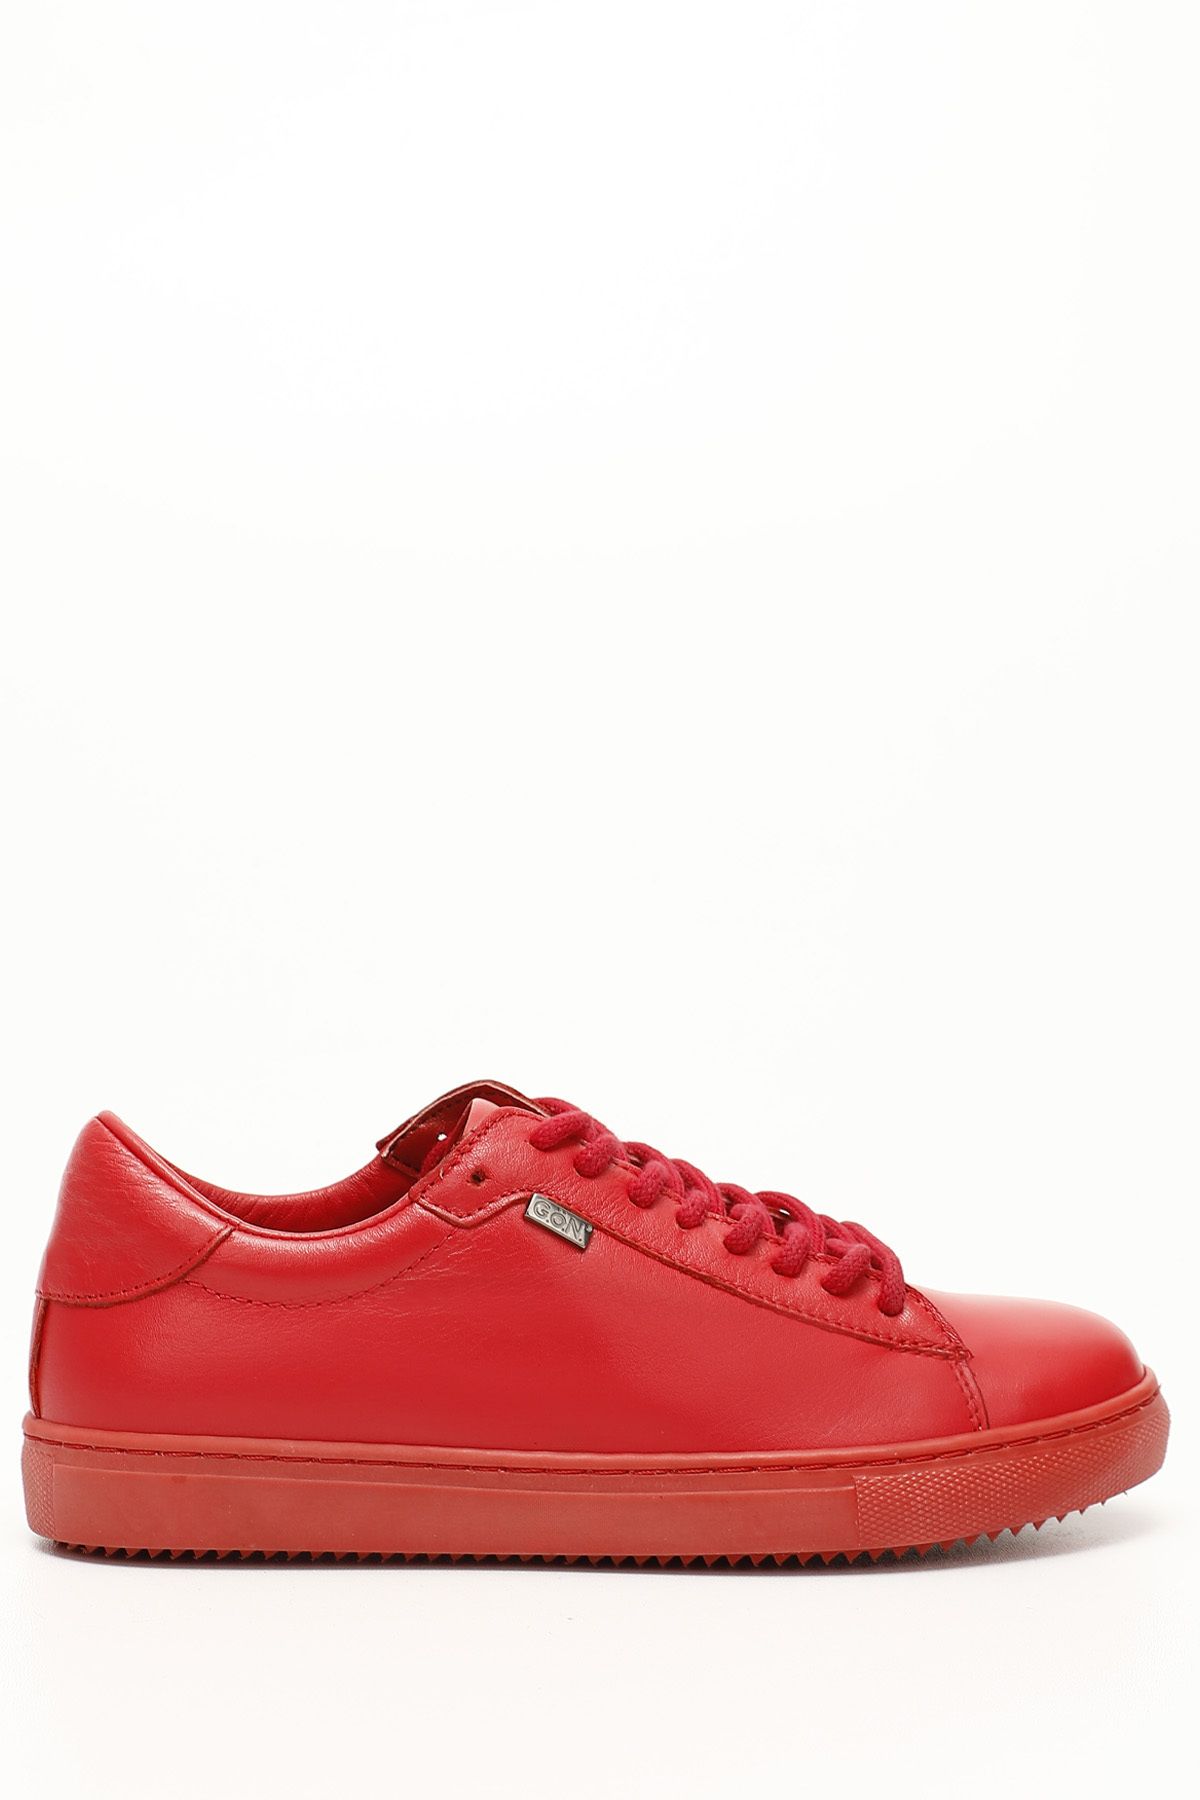 GÖNDERİ(R) Kırmızı Antik Gön Hakiki Deri Yuvarlak Burun Bağcıklı Kadın Sneaker 24237